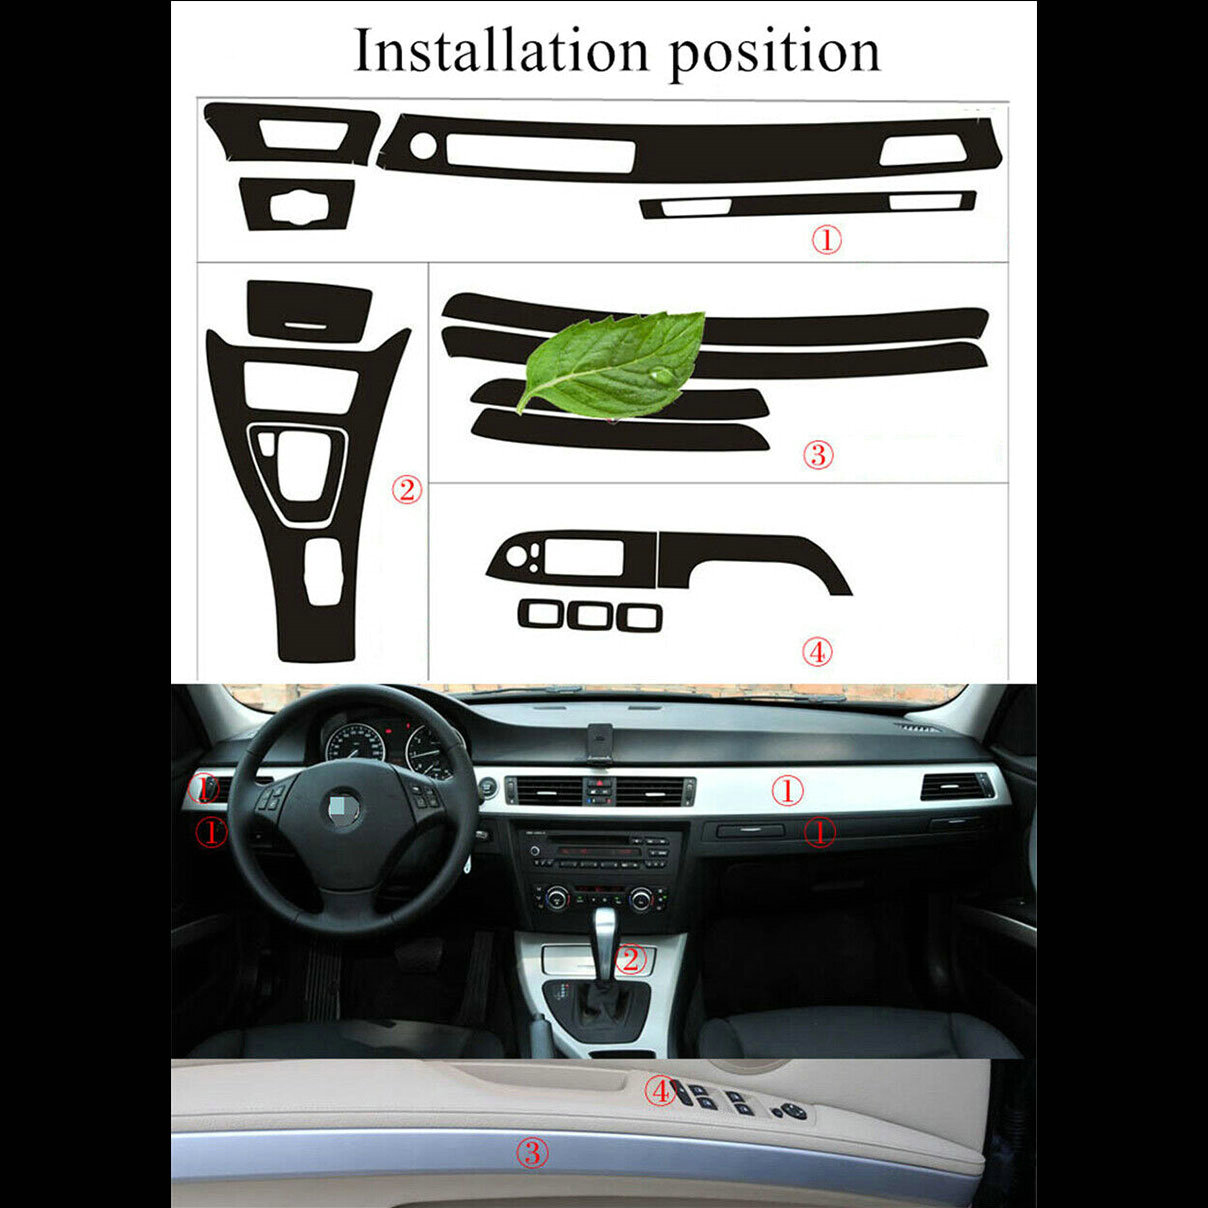  Dashboard Center Console AC Air Conditioner Decal Trim Carbon  Fiber Sticker fits for BMW E90 E92 2006 2007 2008 2009 2010 2011 Car  Accessories : Automotive